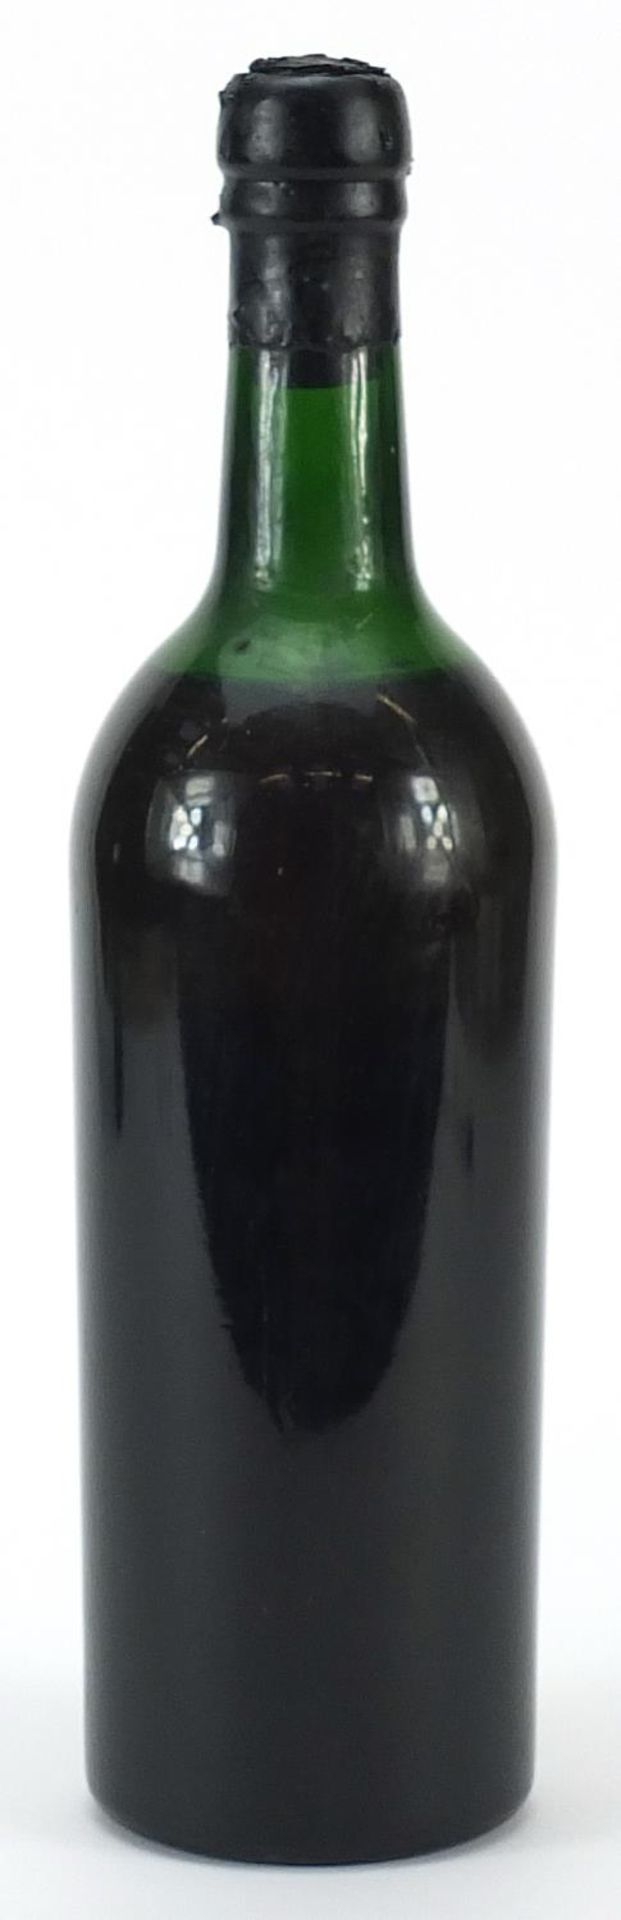 Bottle of vintage 1966 Dows port - Image 2 of 2